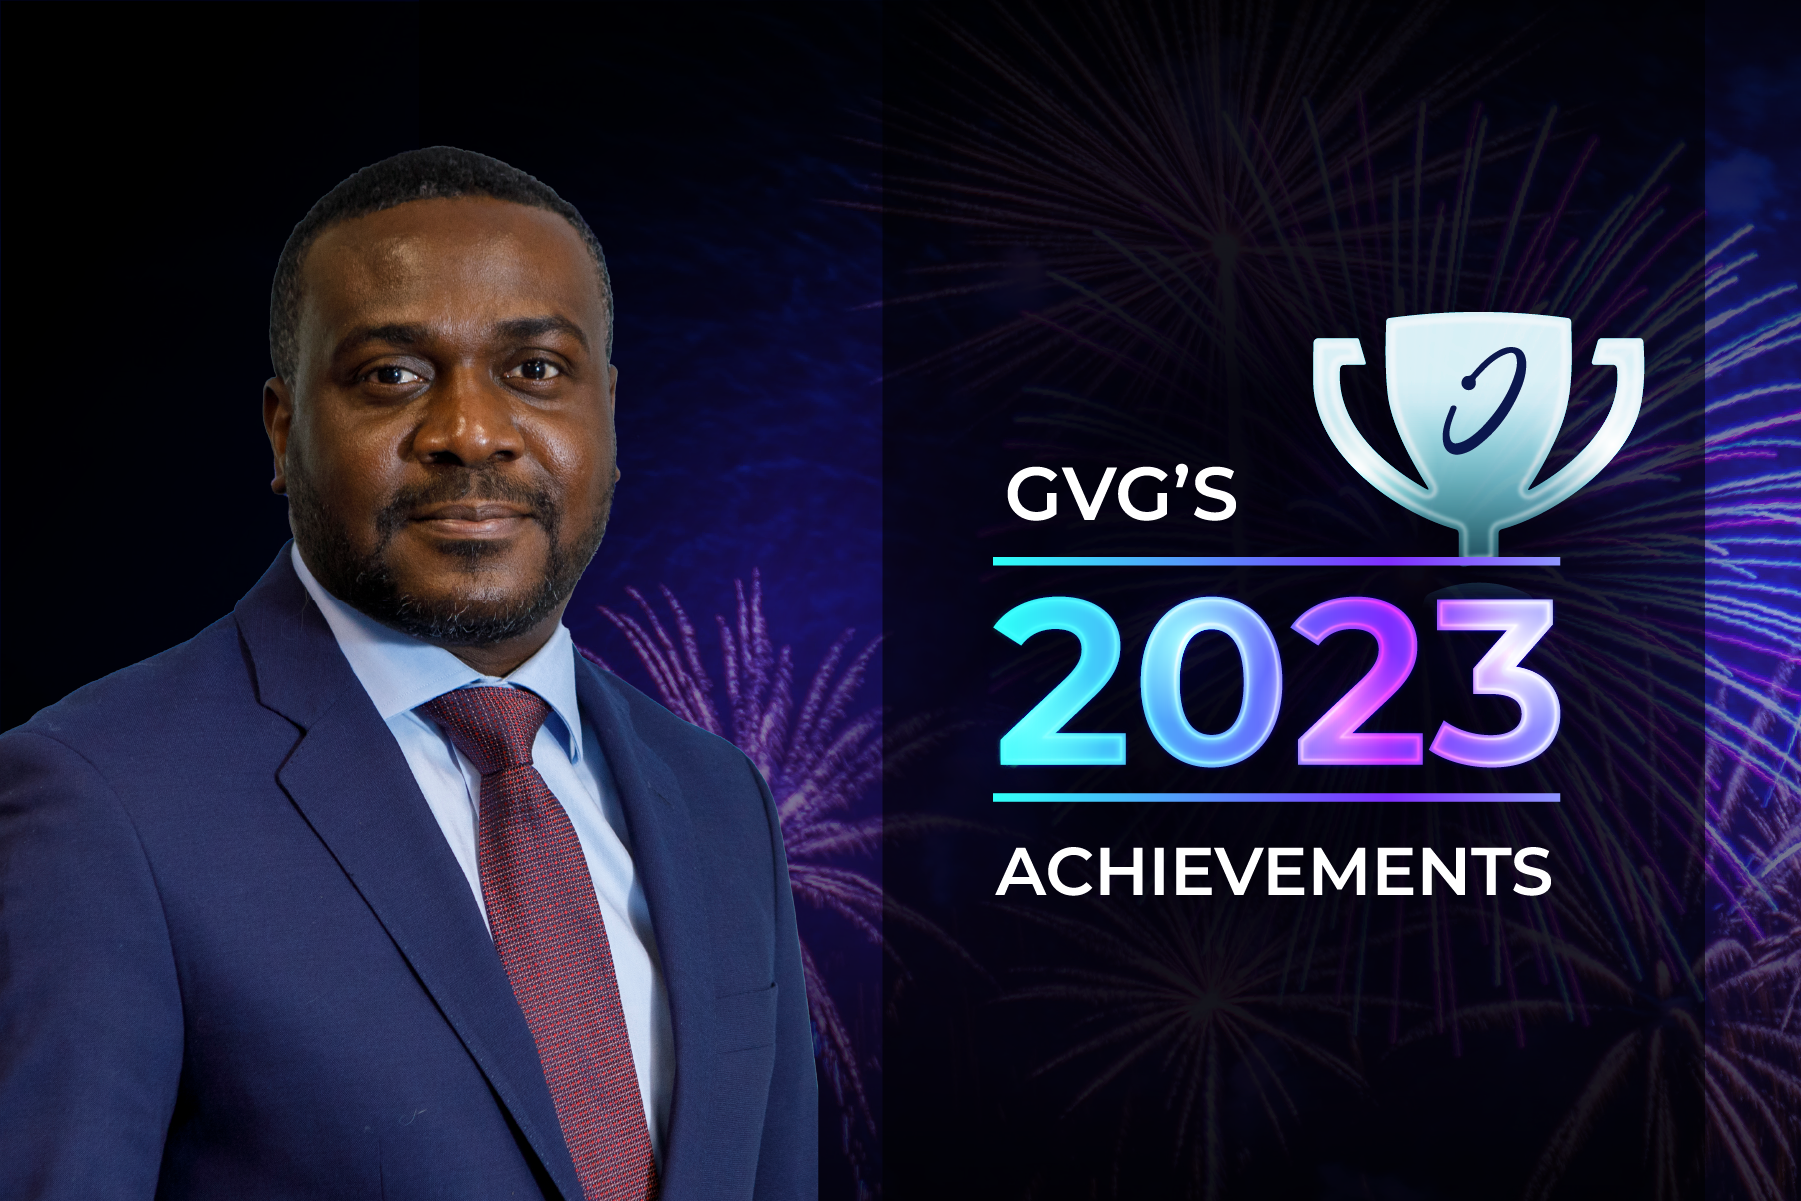 GVG's 2023 achievements